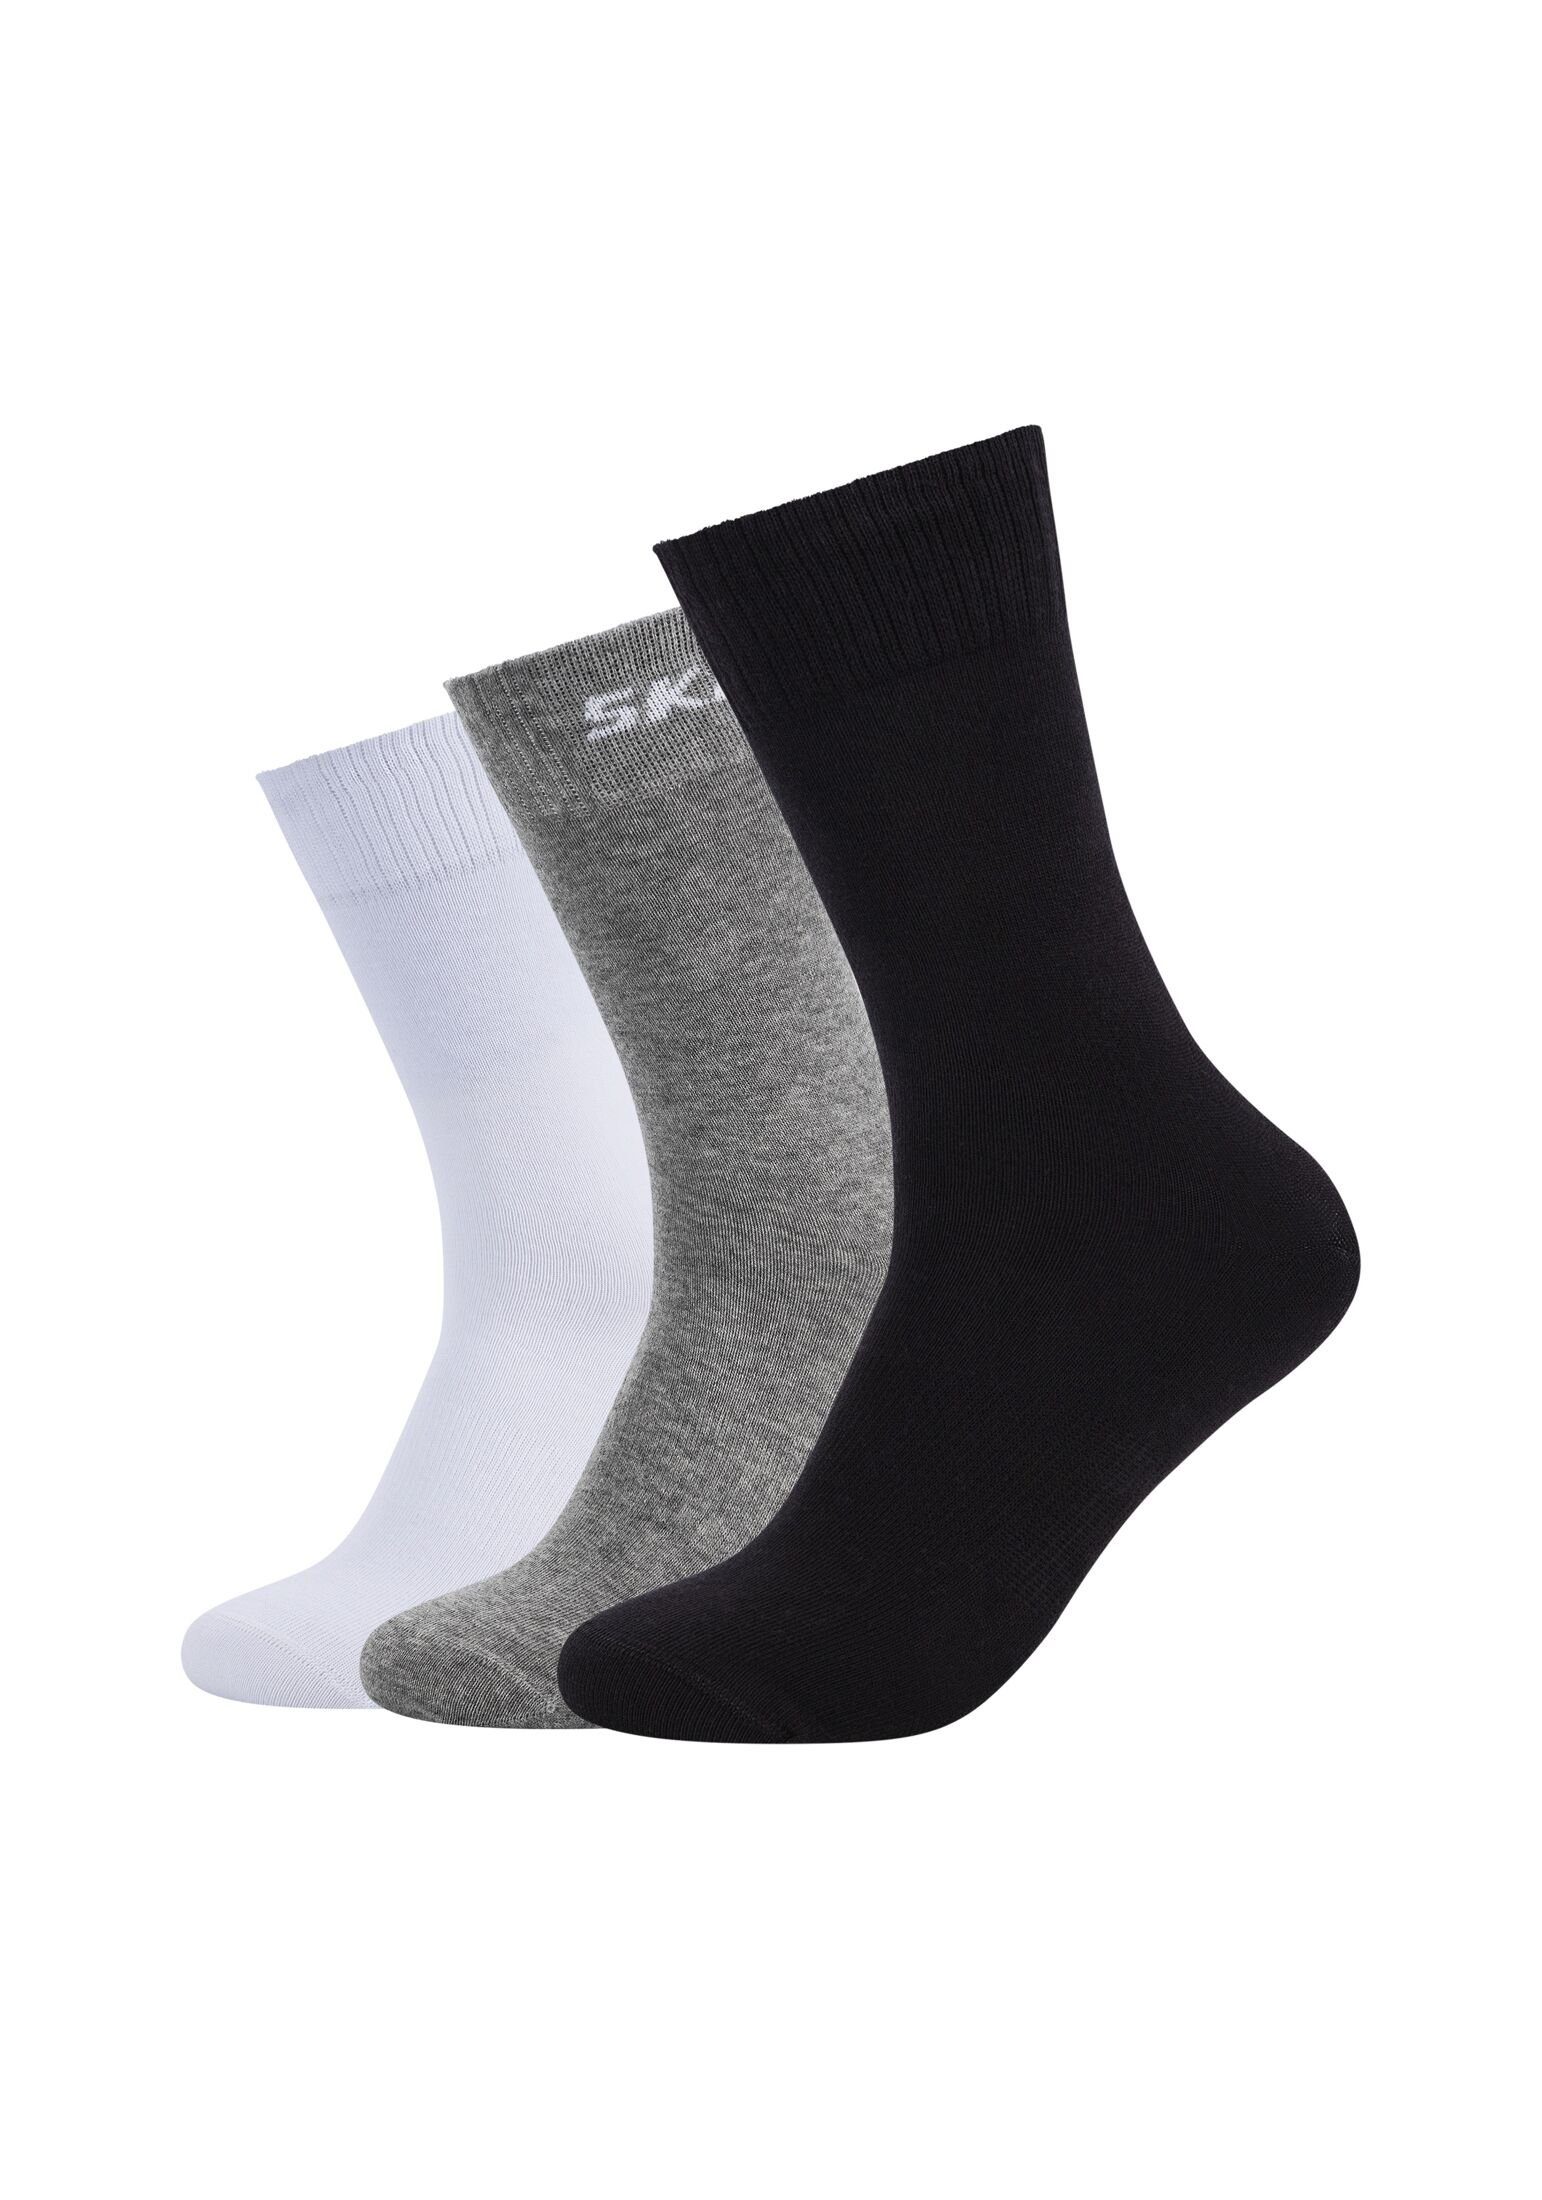 Skechers Socken Socken 6er black/grey mix Pack